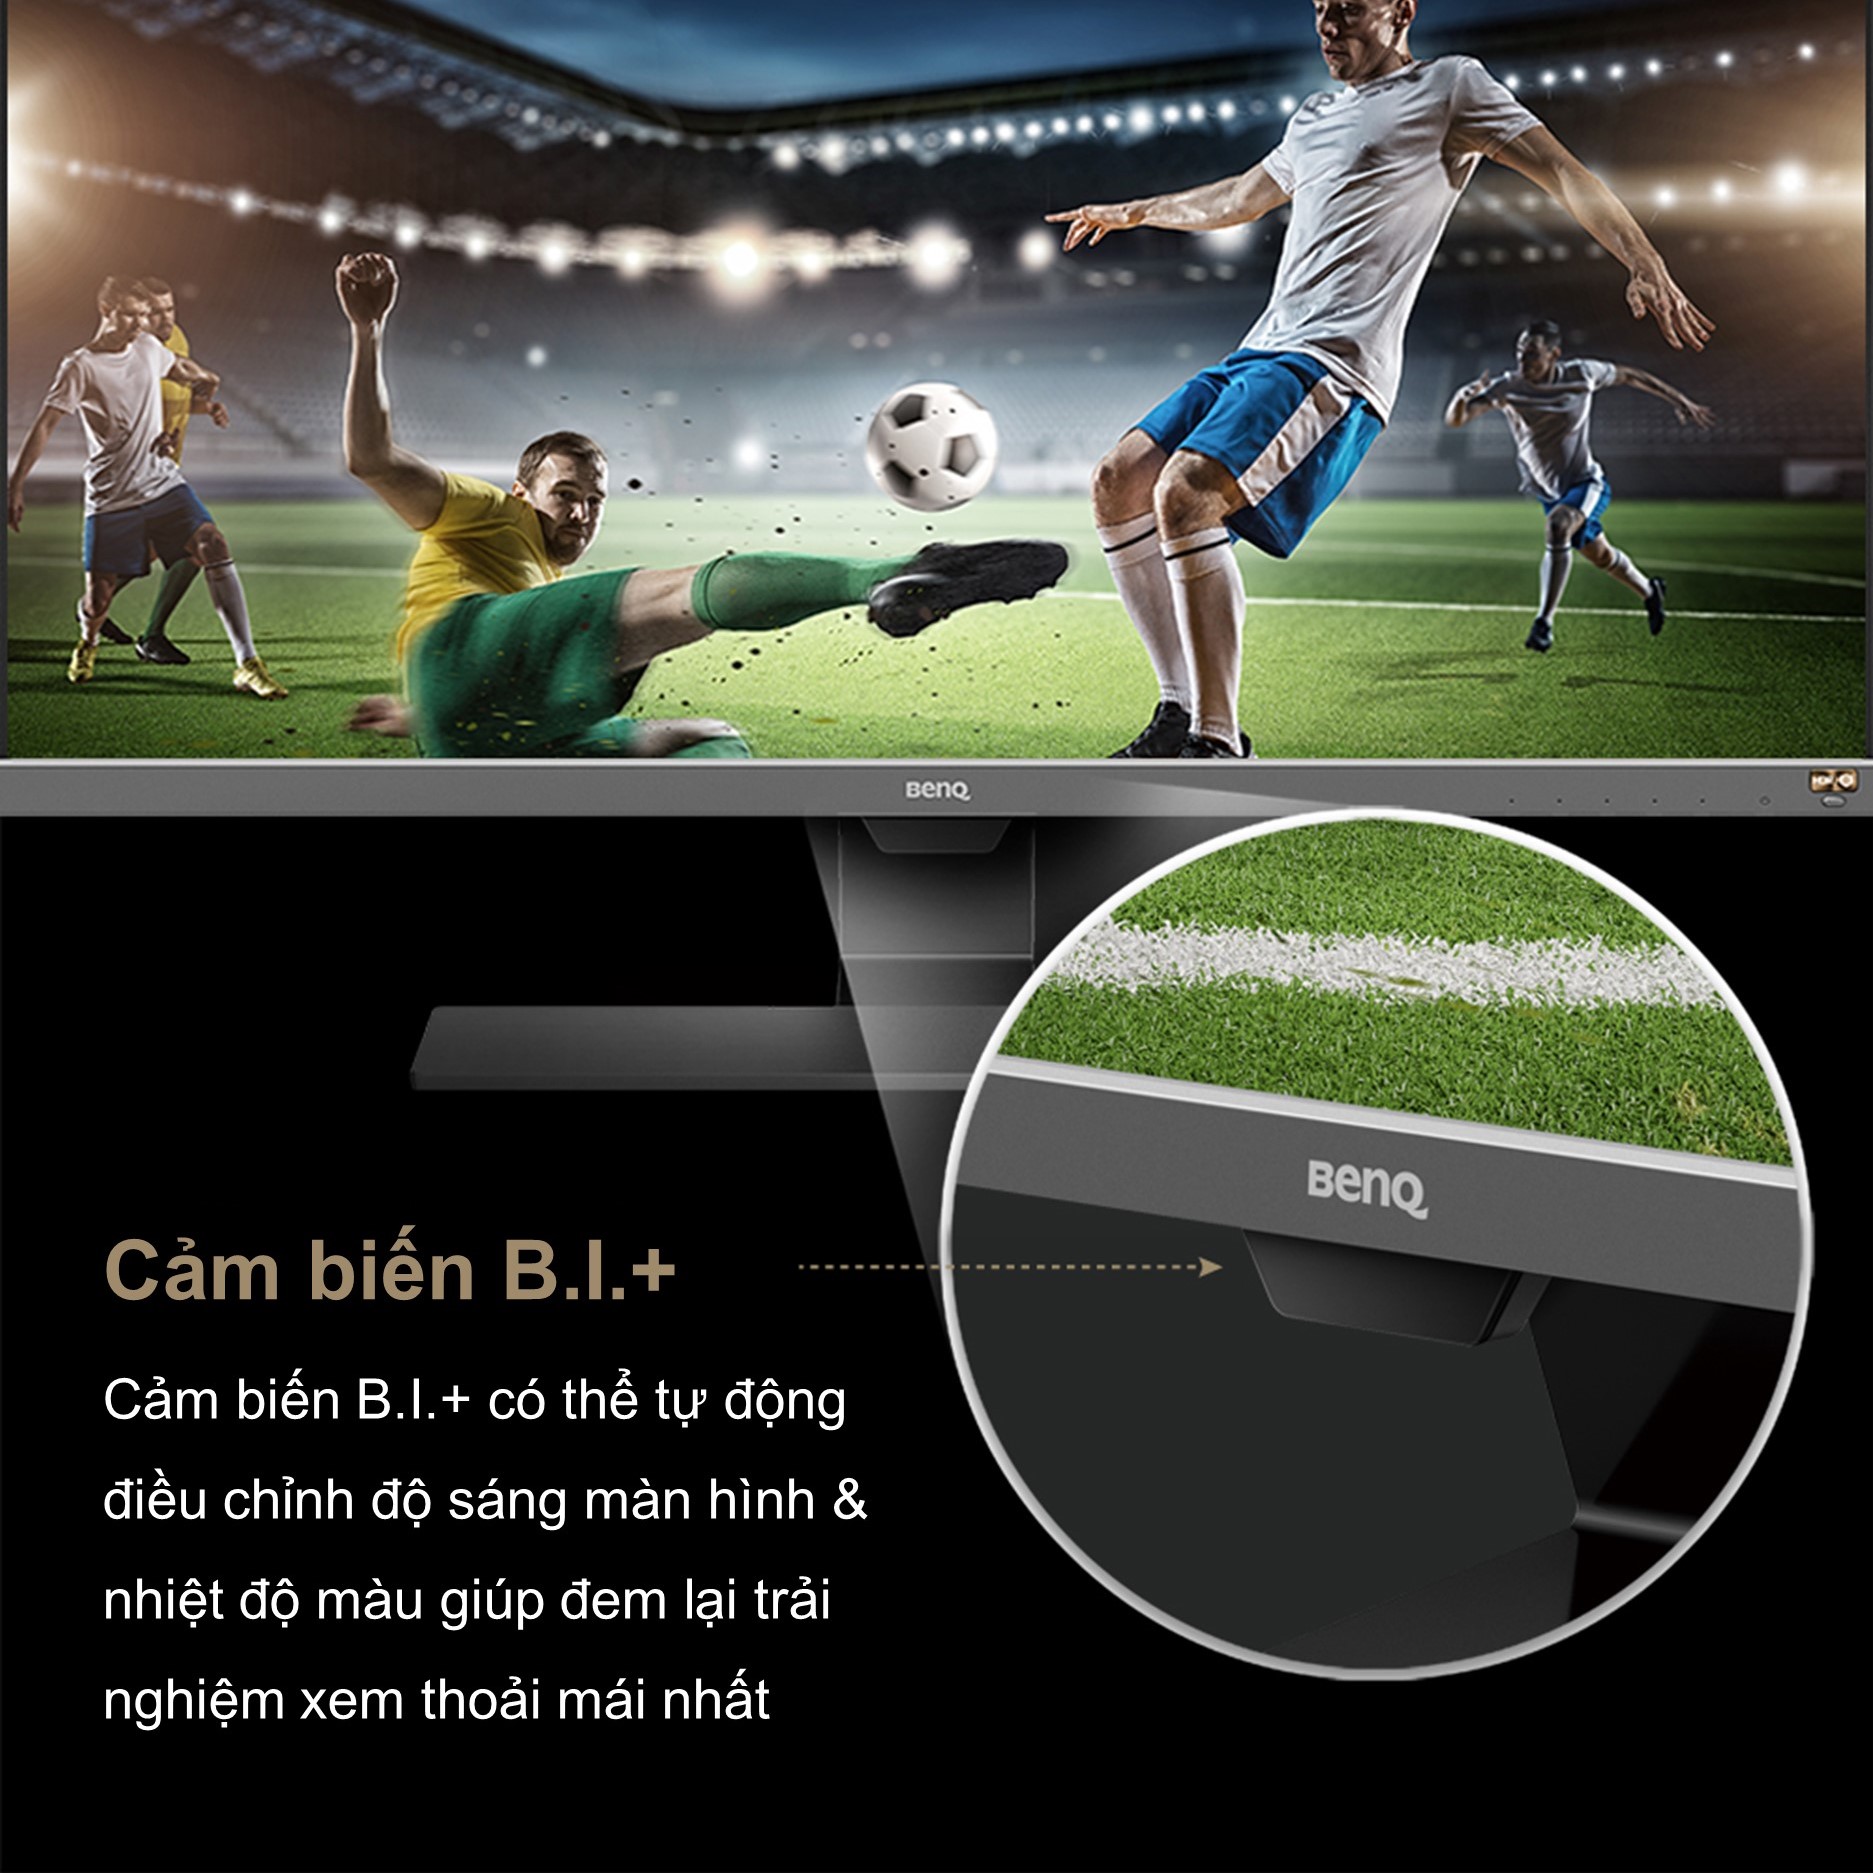 [BÁN CHẠY] Màn hình máy tính BenQ EW3270U 32 inch 4K HDR HDMI DP USB-C Ports Eye-care chuyên Xem phim...